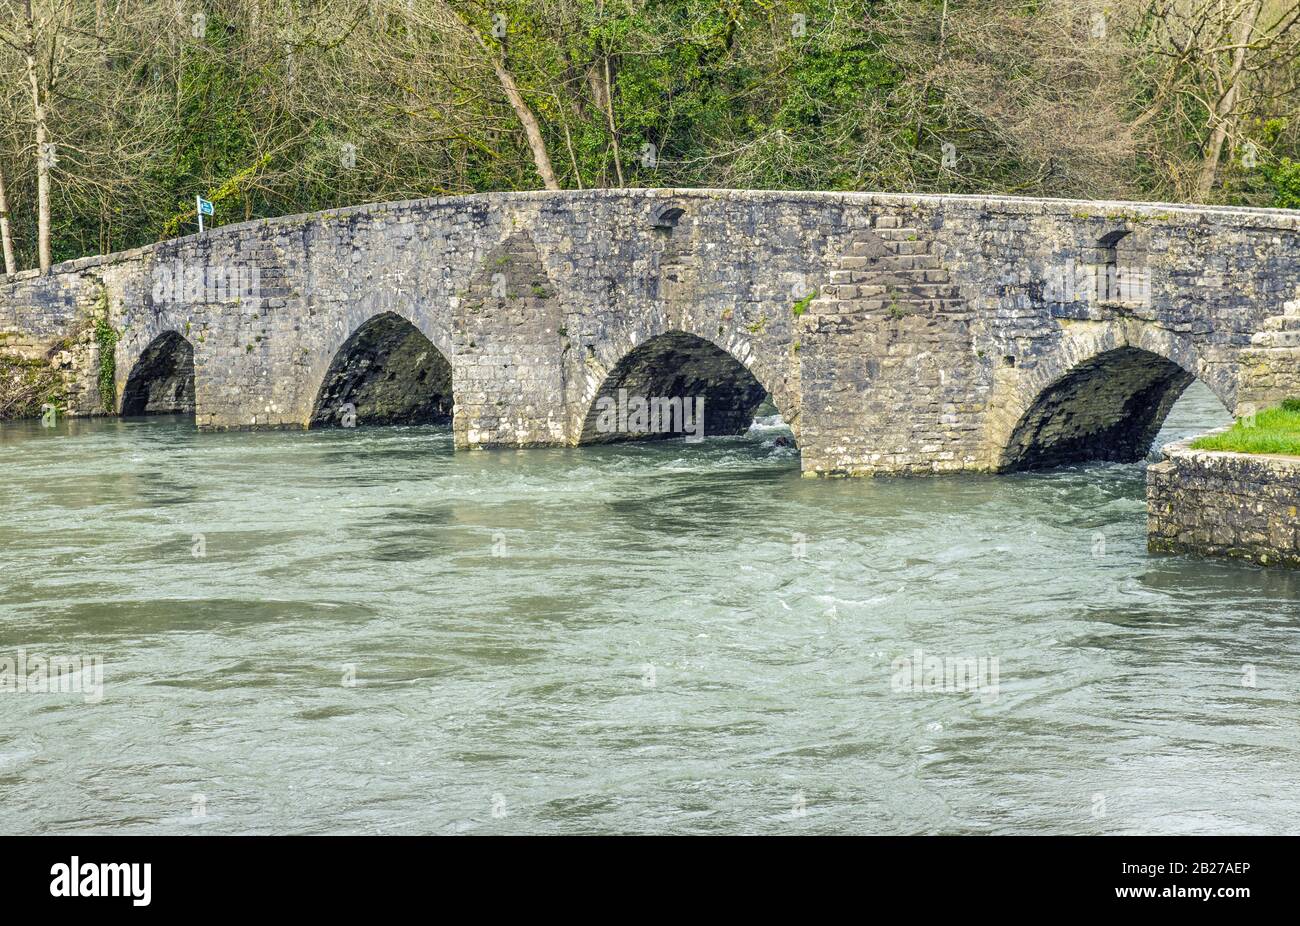 Le pont de trempage Merthyr Mawr où les moutons étaient « ébréchés » dans la rivière Ogmore à travers les trous sur le côté du pont pour aider à éliminer les insectes, etc Banque D'Images